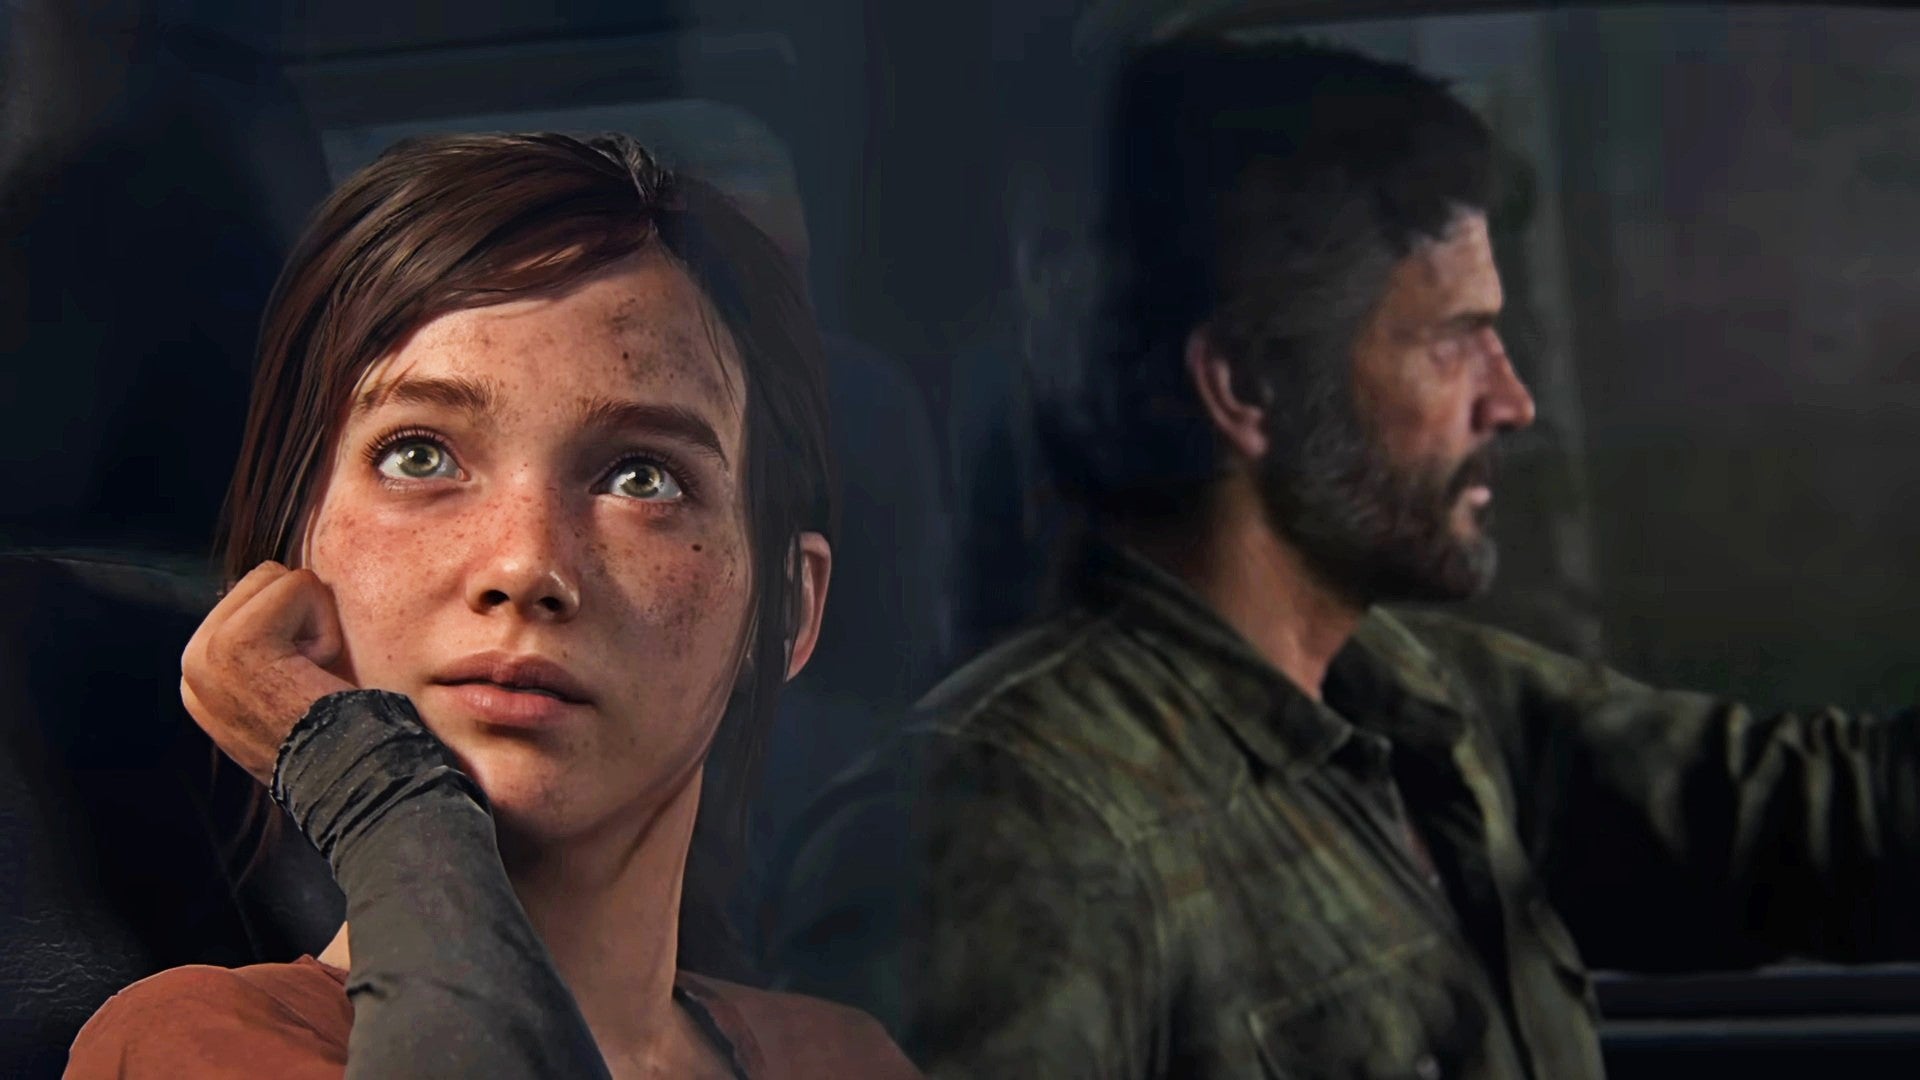 Bilder zu PlayStation-Deals am Black Friday: The Last of Us Part 1 bei Otto für 49,99 Euro und mehr